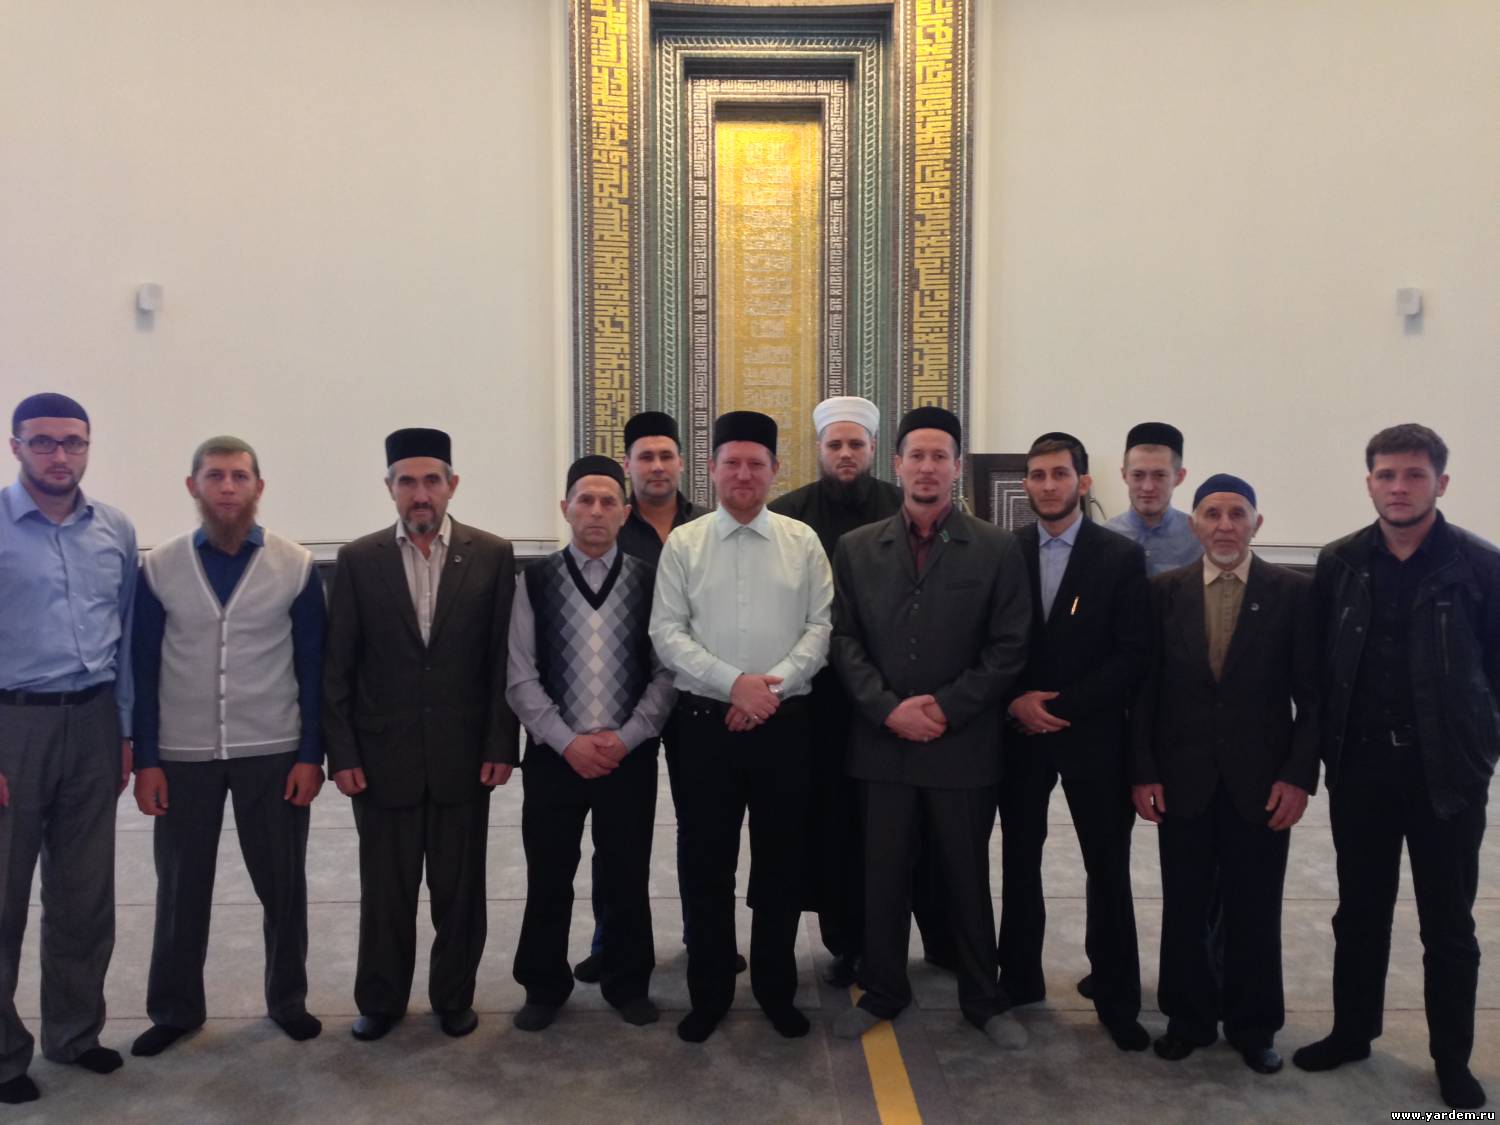 Имамы из российских регионов посетили мечеть "Ярдэм". Общие новости